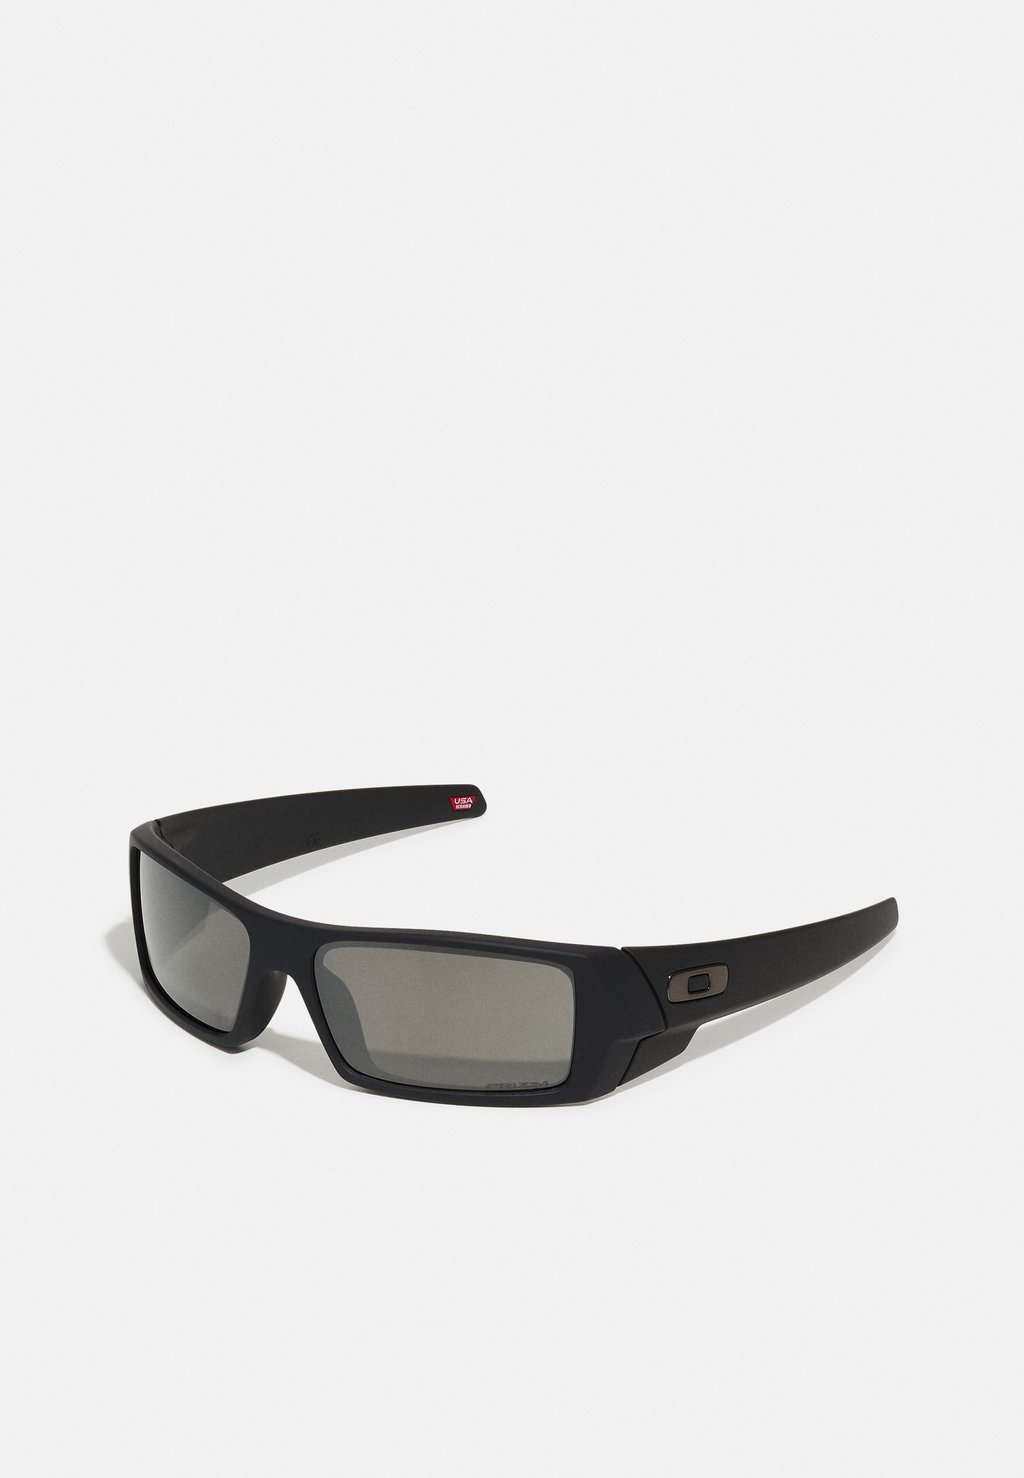 Солнцезащитные очки Gascan Unisex Oakley, цвет matte black